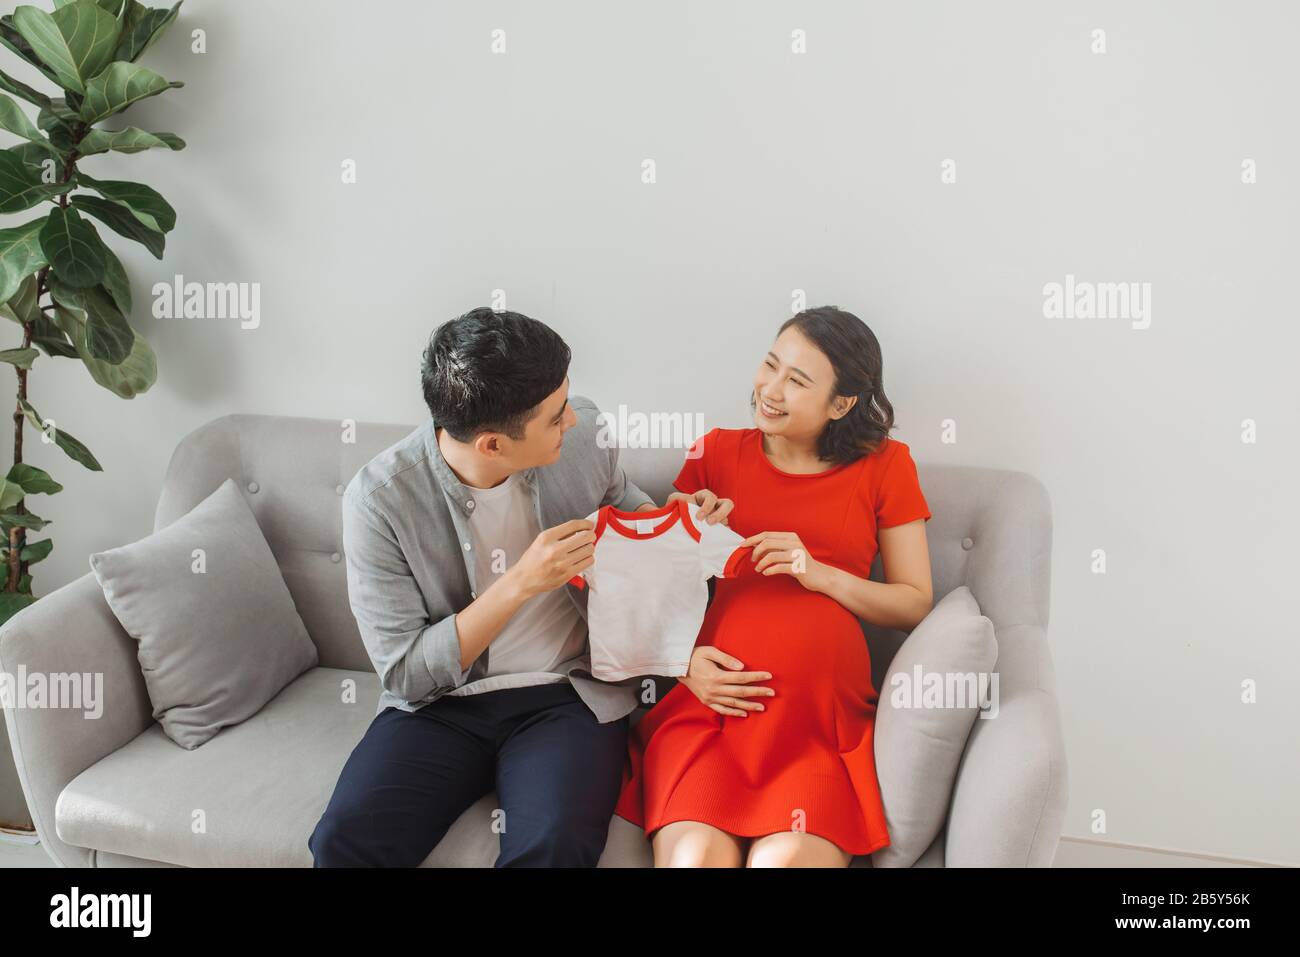 Un jeune mari et une femme enceinte présentent leur t-shirt bébé lorsqu'ils sont assis sur un canapé. Banque D'Images